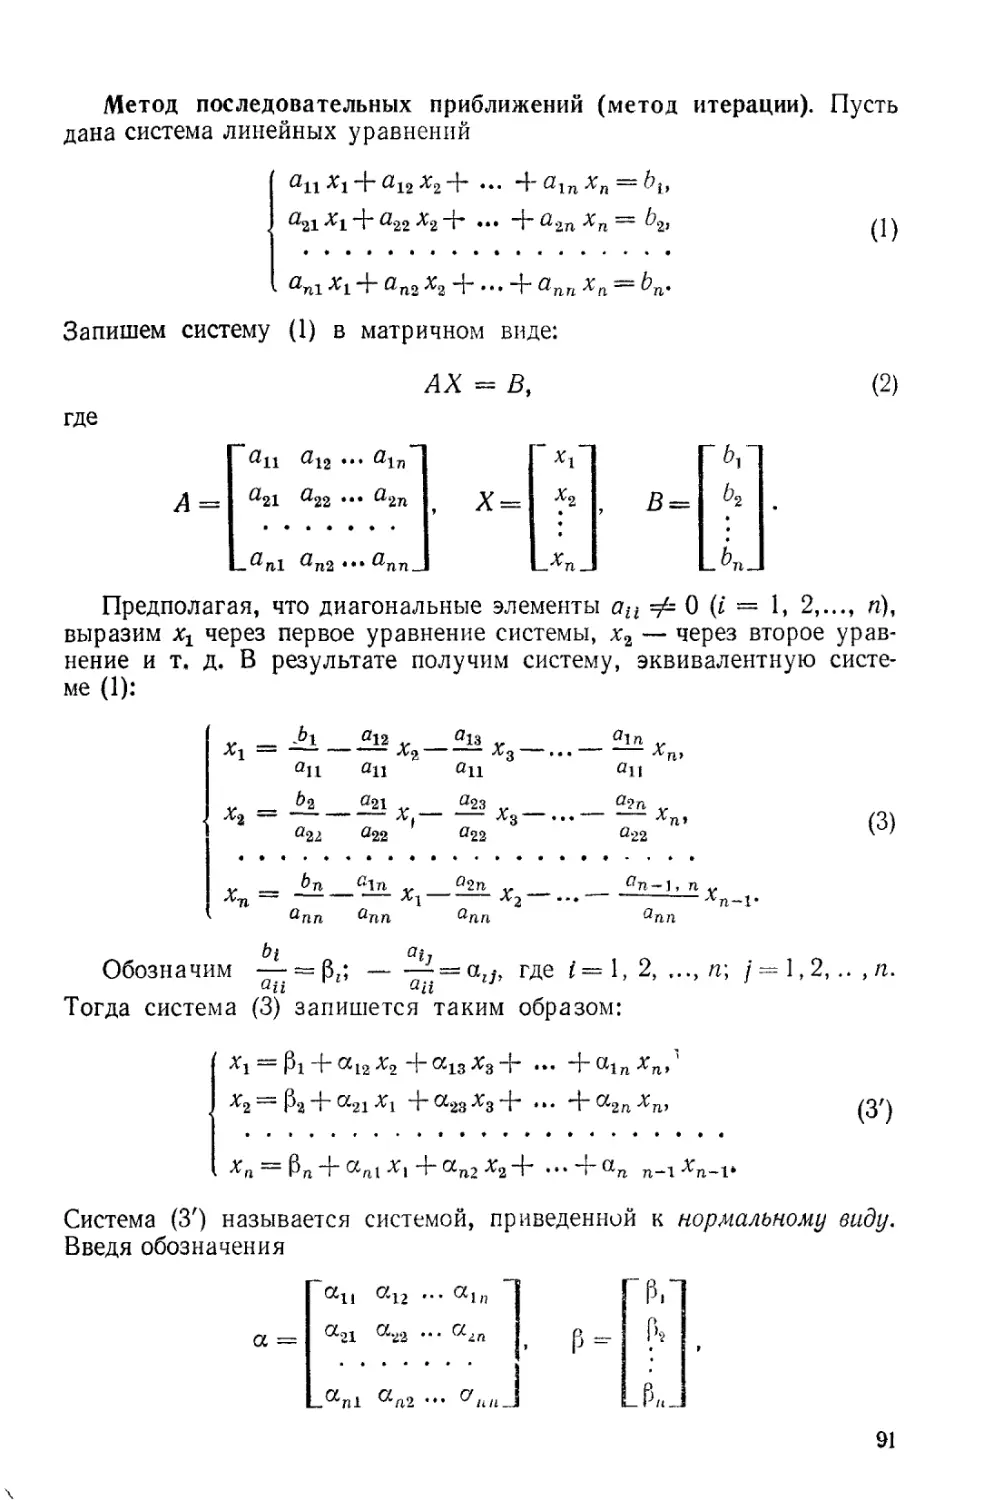 § 2.15. Приближенные методы решения систем линейных уравнений